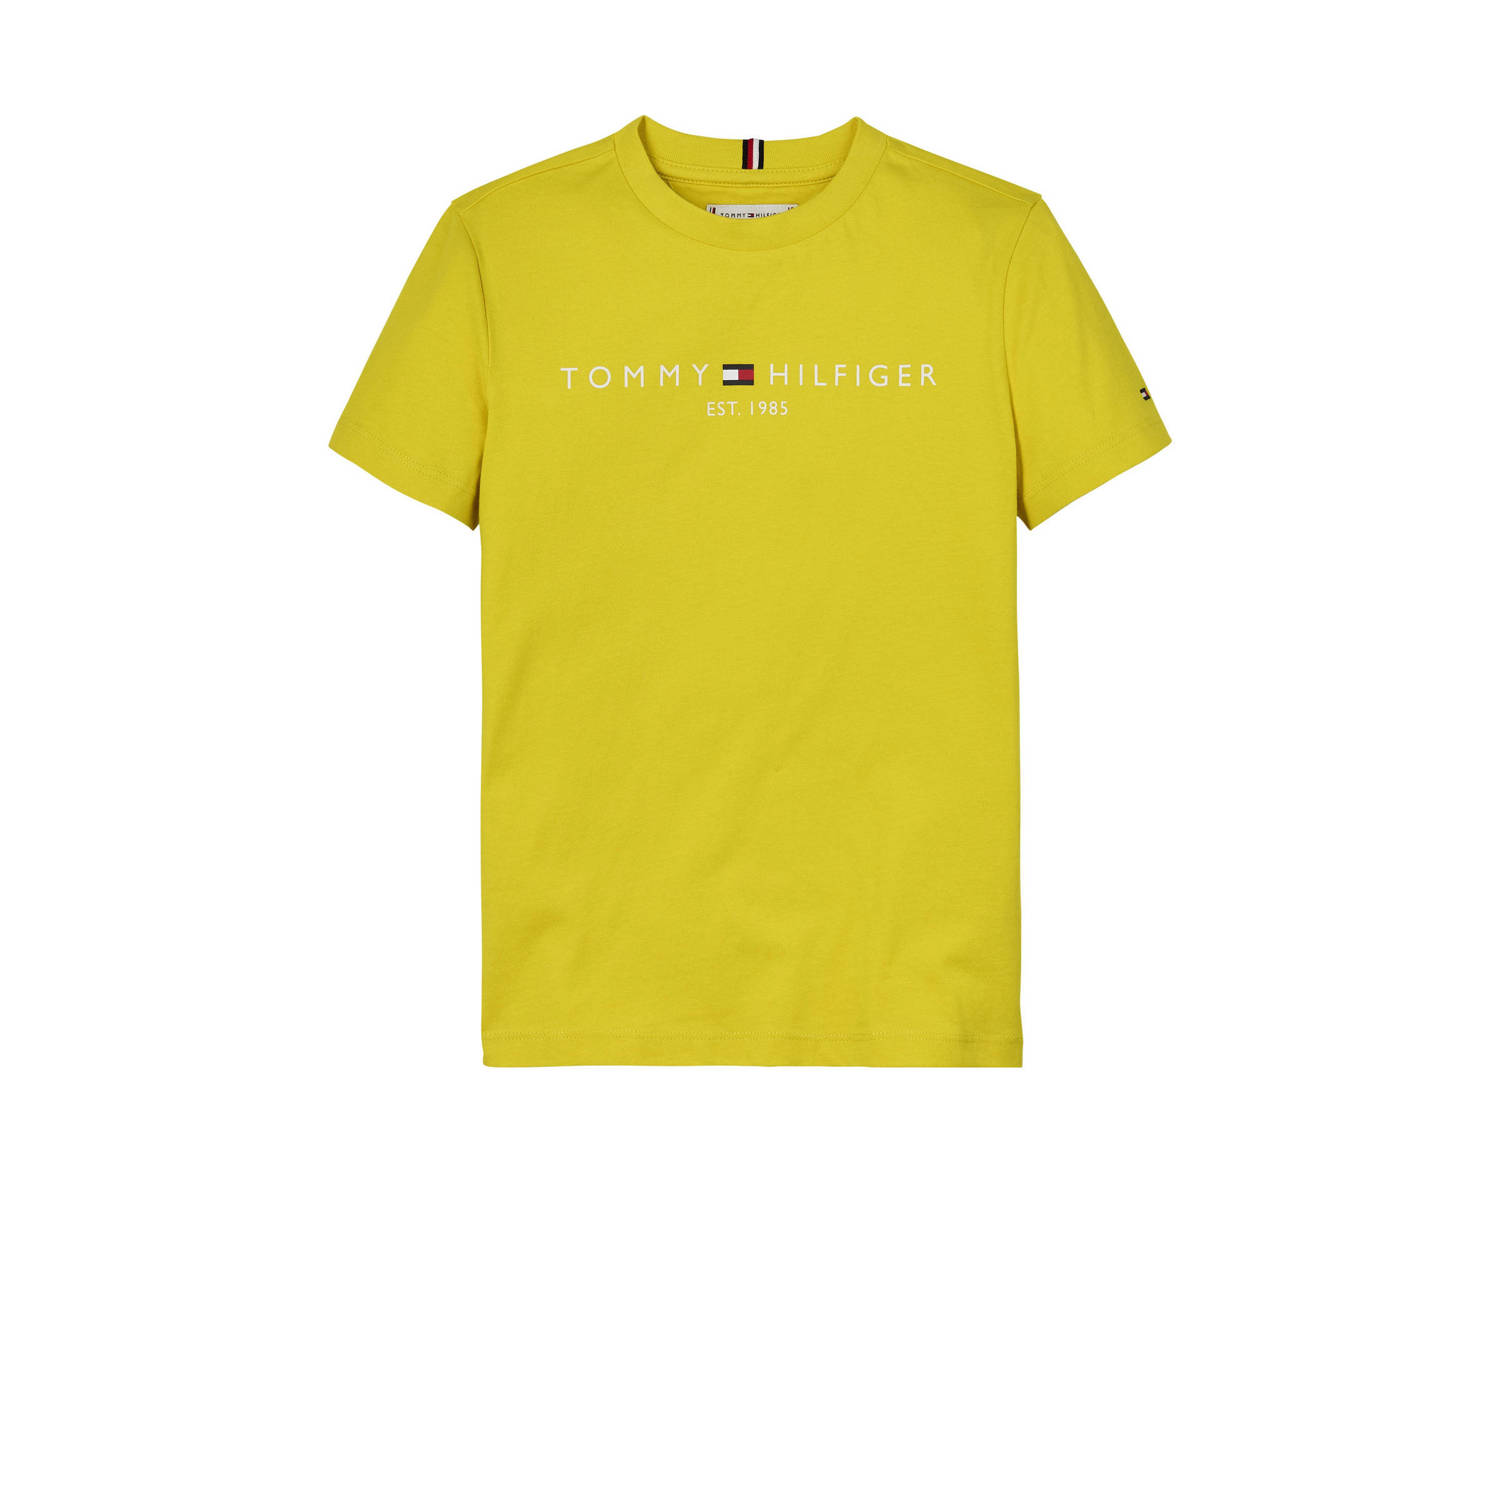 Tommy Hilfiger T-shirt met logo knalgeel Katoen Ronde hals 104